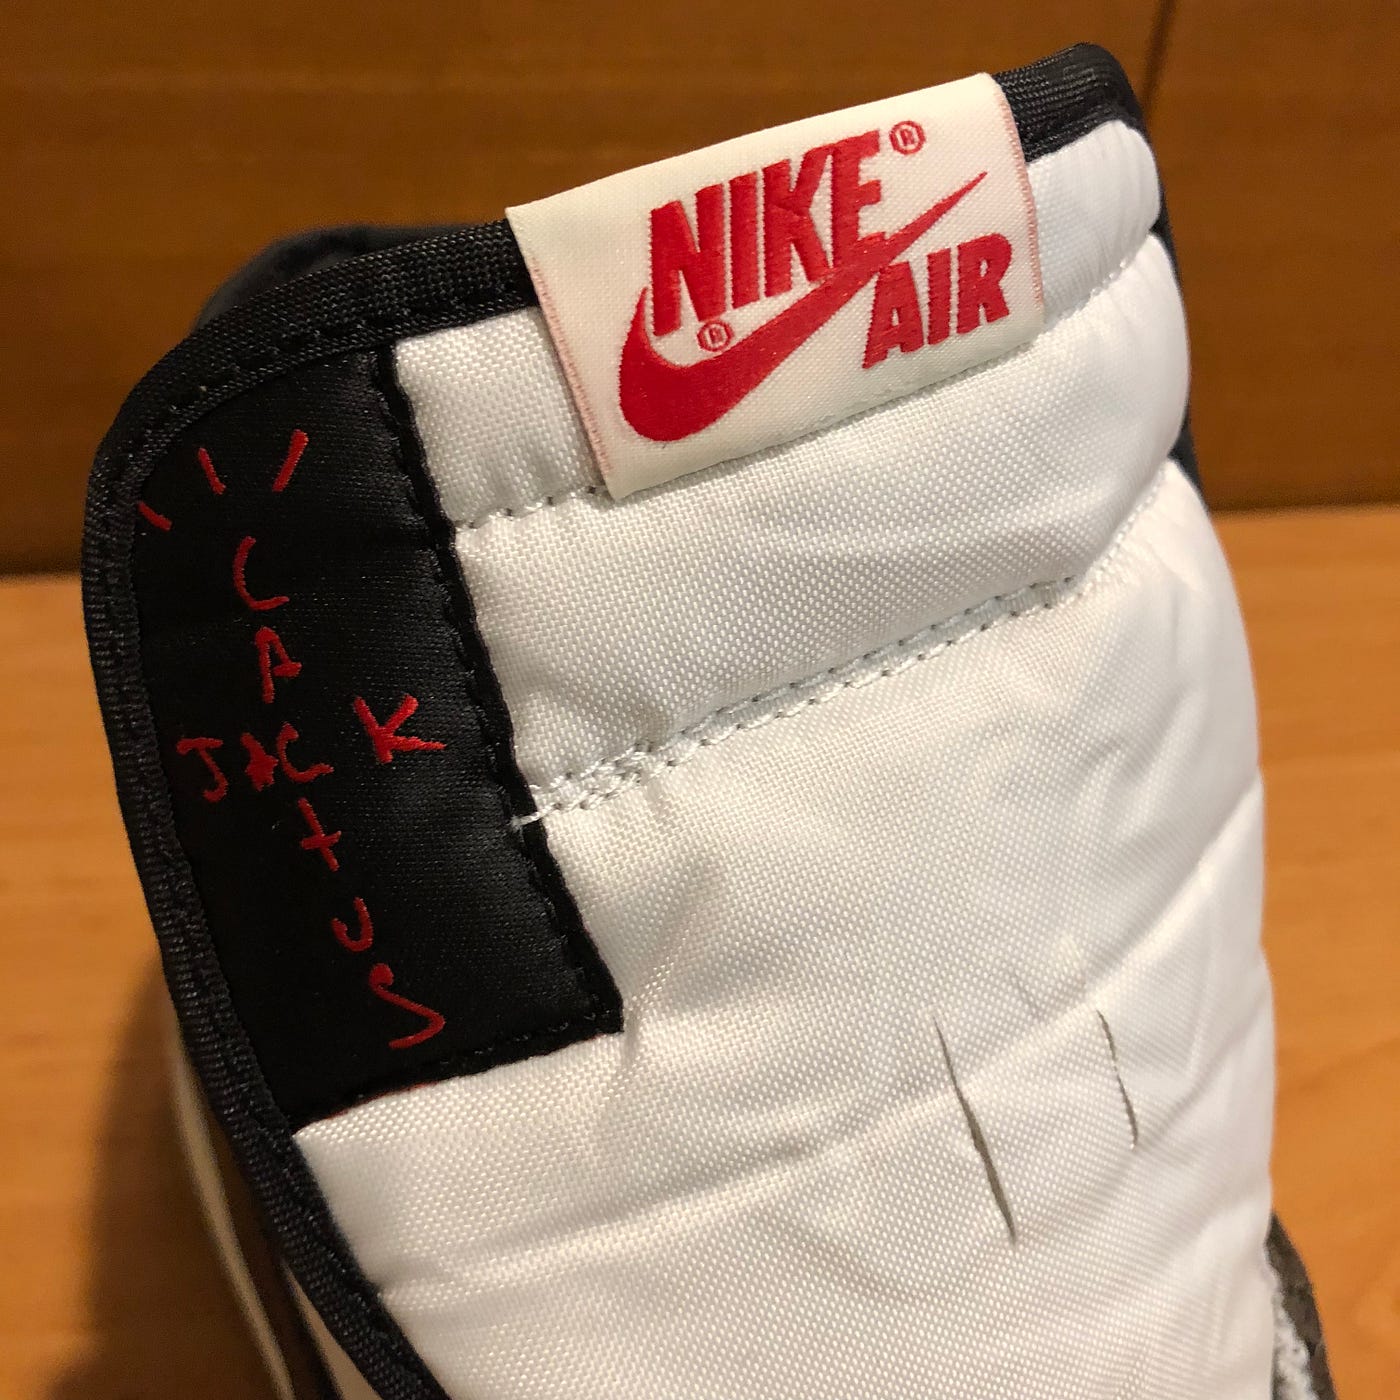 In-Depth Sneaker Review: Nike Air Jordan 1 Retro High Travis Scott, by  Jasper Chou, Add_Space^